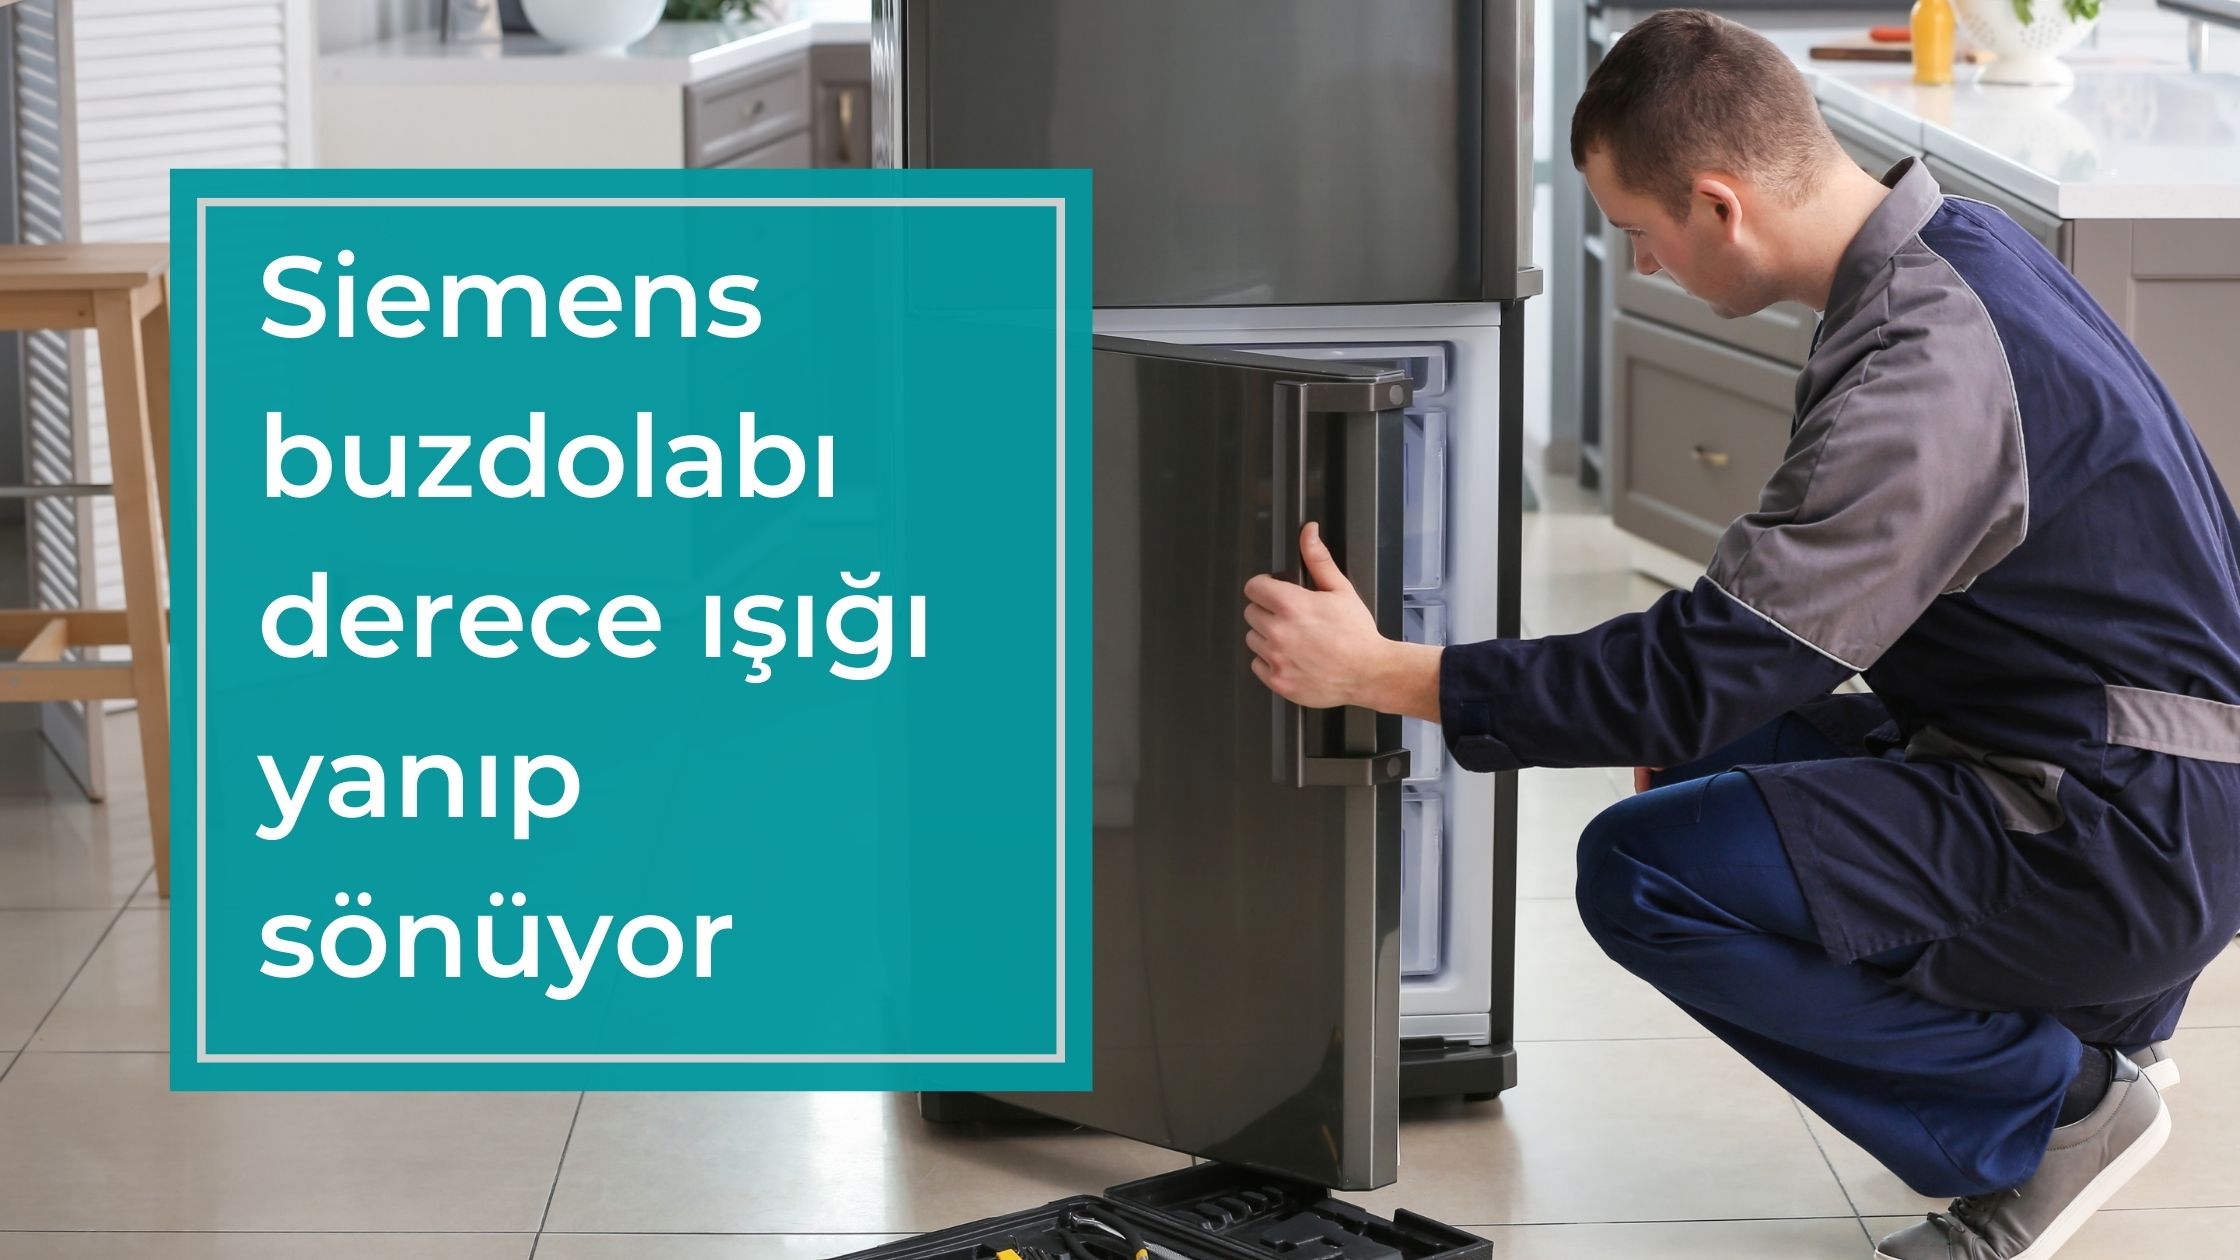 Siemens Buzdolabı Derece Işığı Yanıp Sönüyor